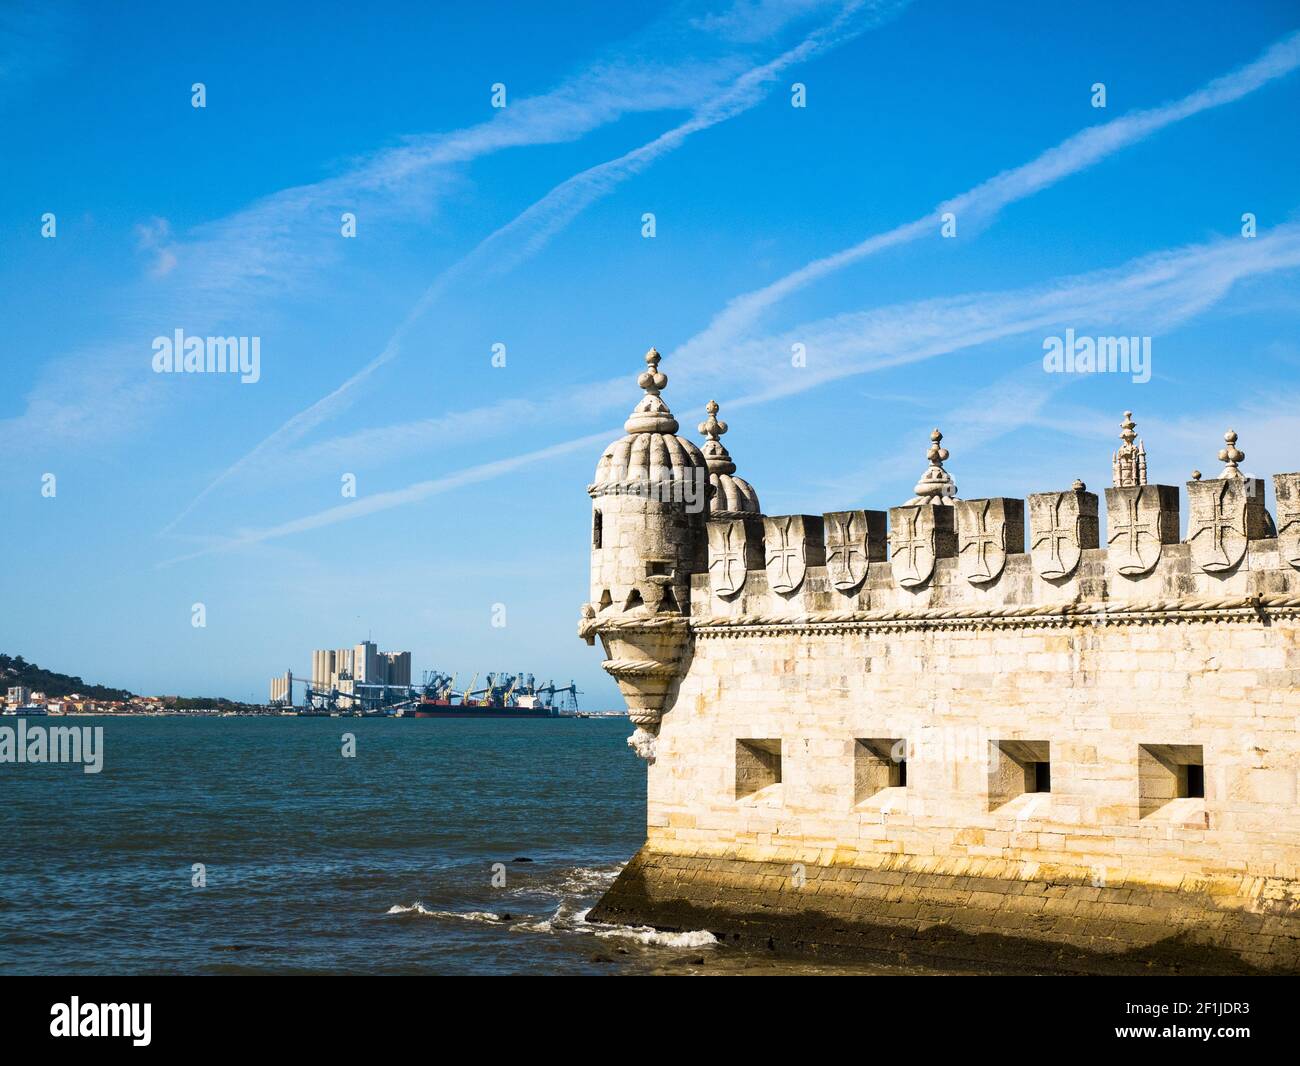 Vue sur la tour de Belem, le Tage, jour clair et ciel bleu, Lisbonne Banque D'Images